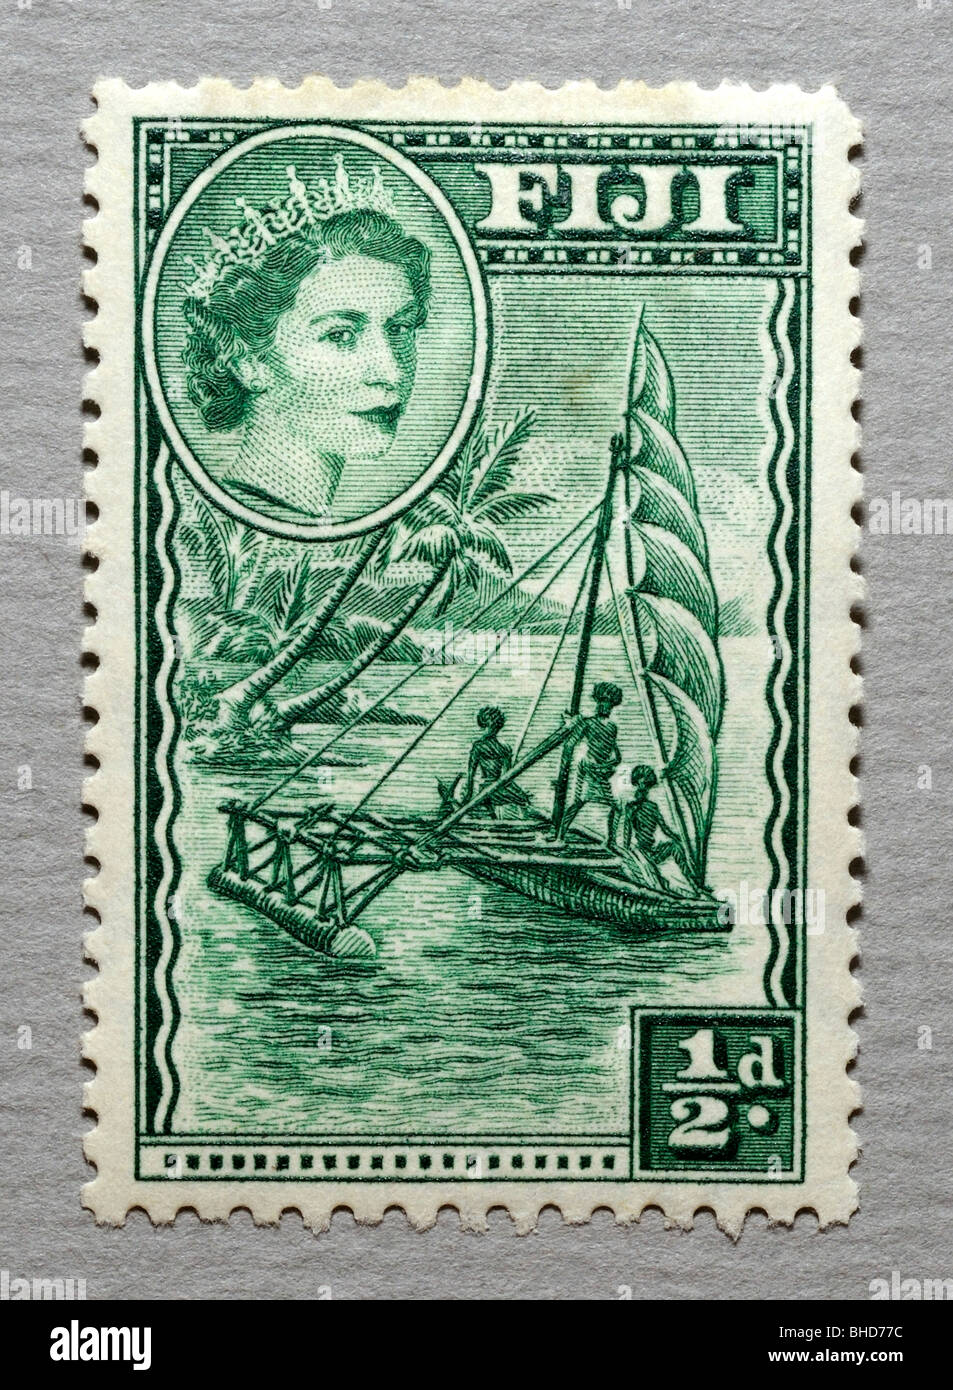 Fiji Postage Stamp. Stock Photo